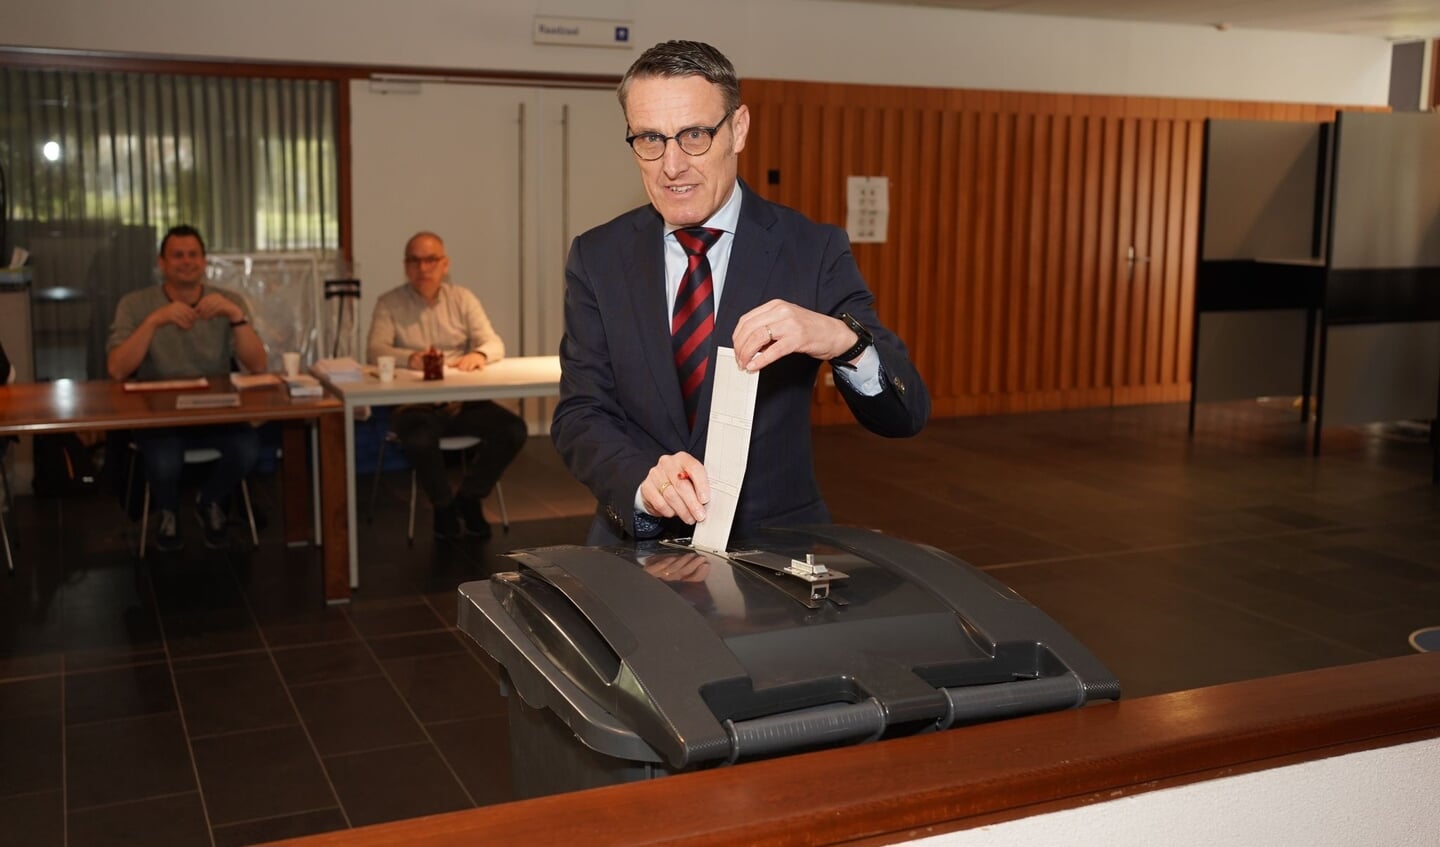 Burgemeester Van der Meijden brengt zijn stem uit